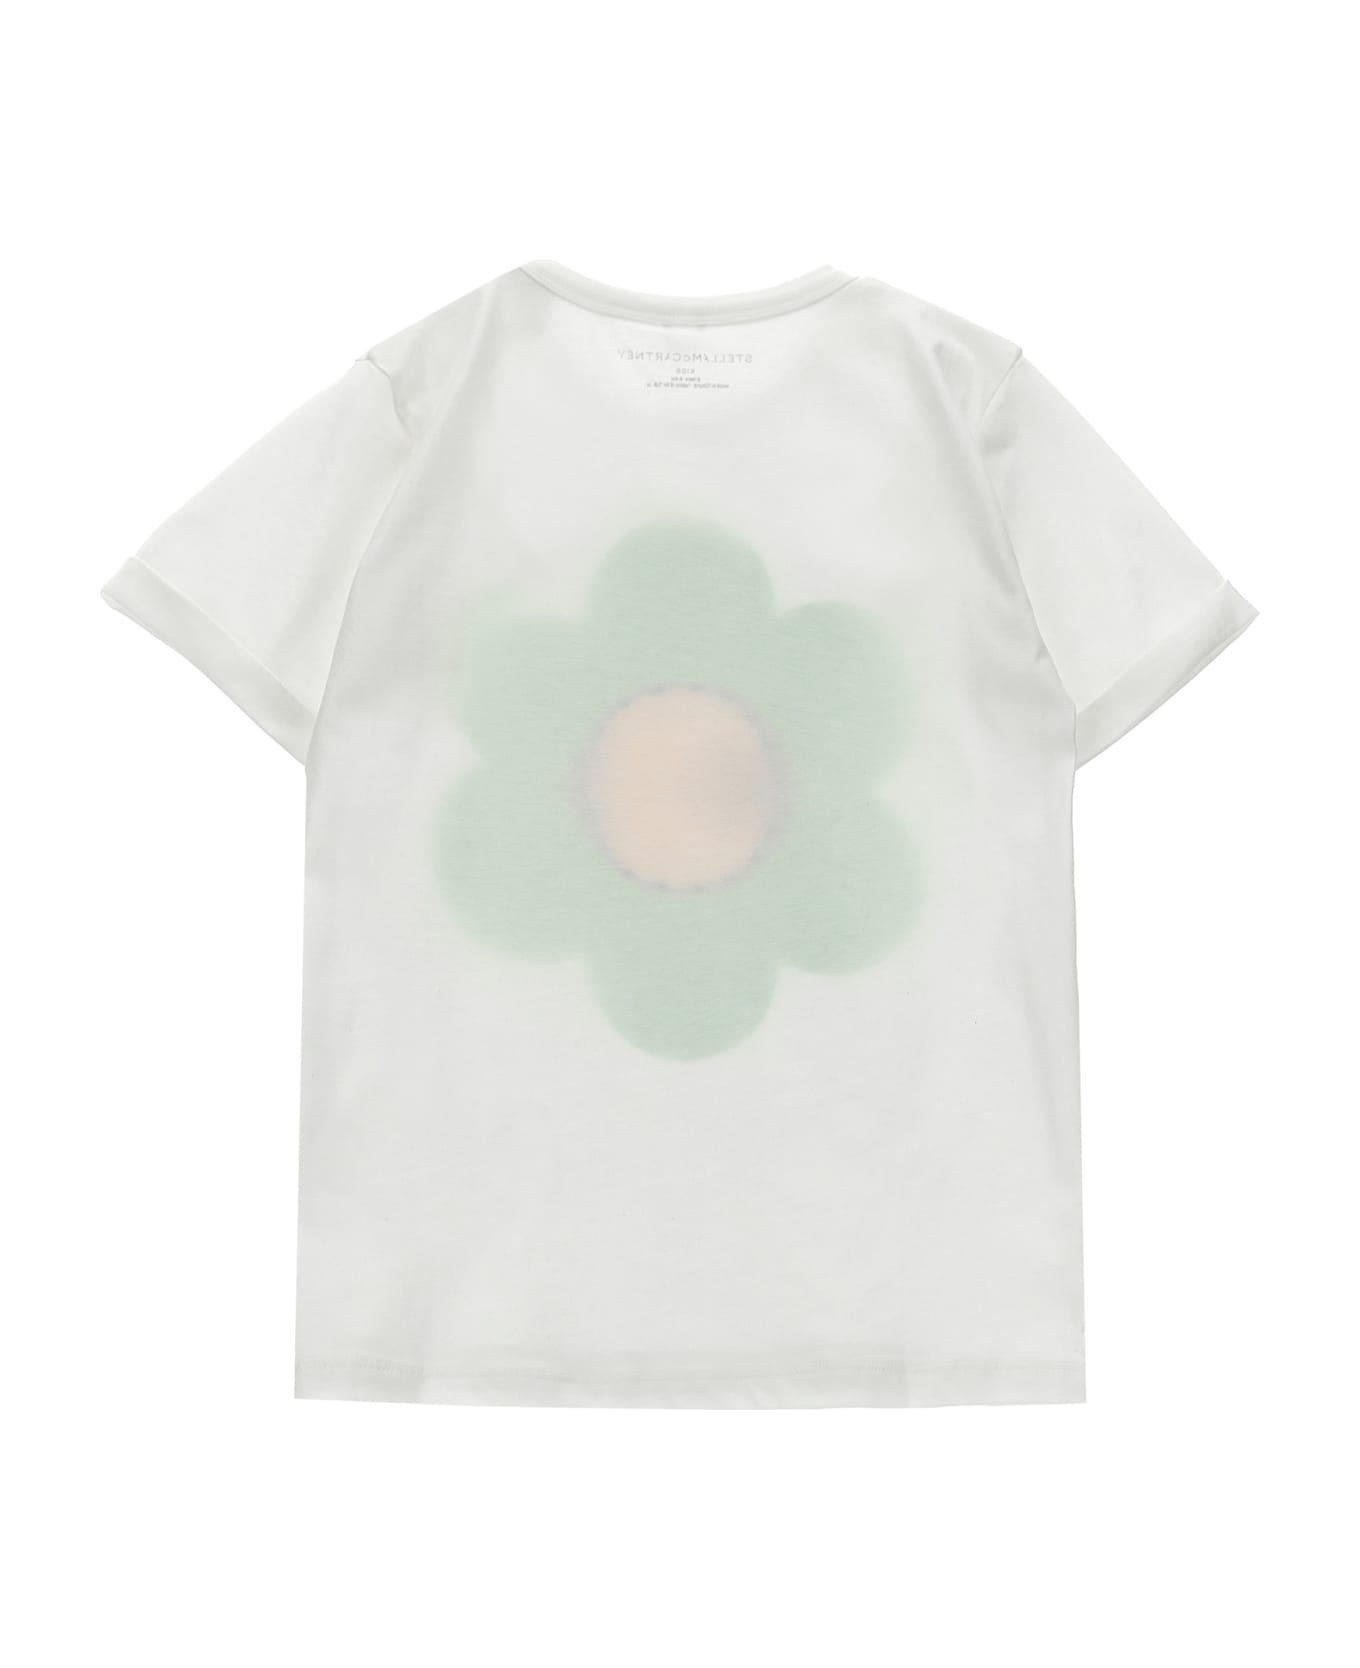 Stella McCartney Print And Rhinestone T-shirt - Avorio